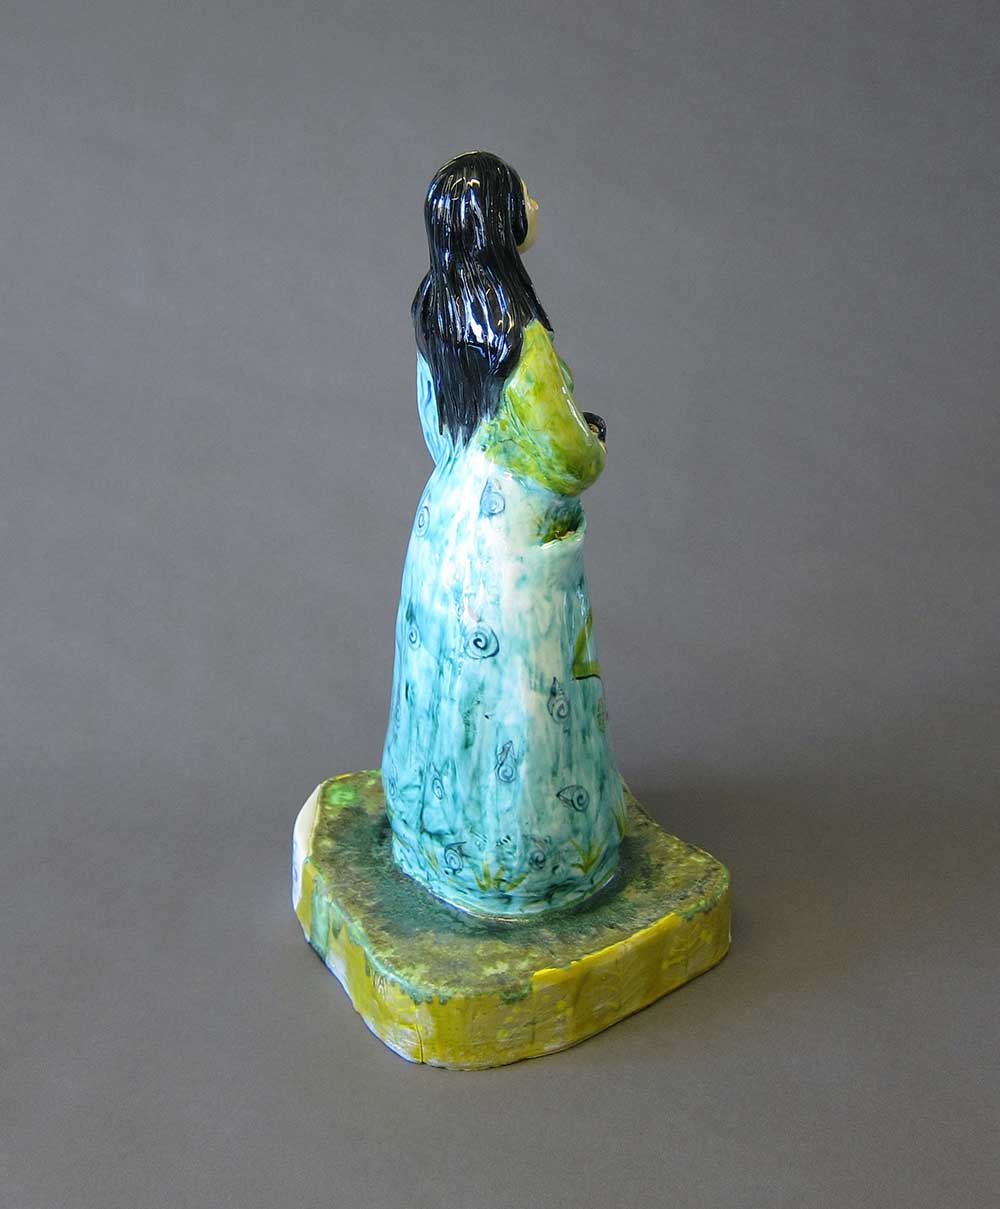 Diosa del Bosque back view, Ceramic mold Figure, 18”x 8”x6”, 2017